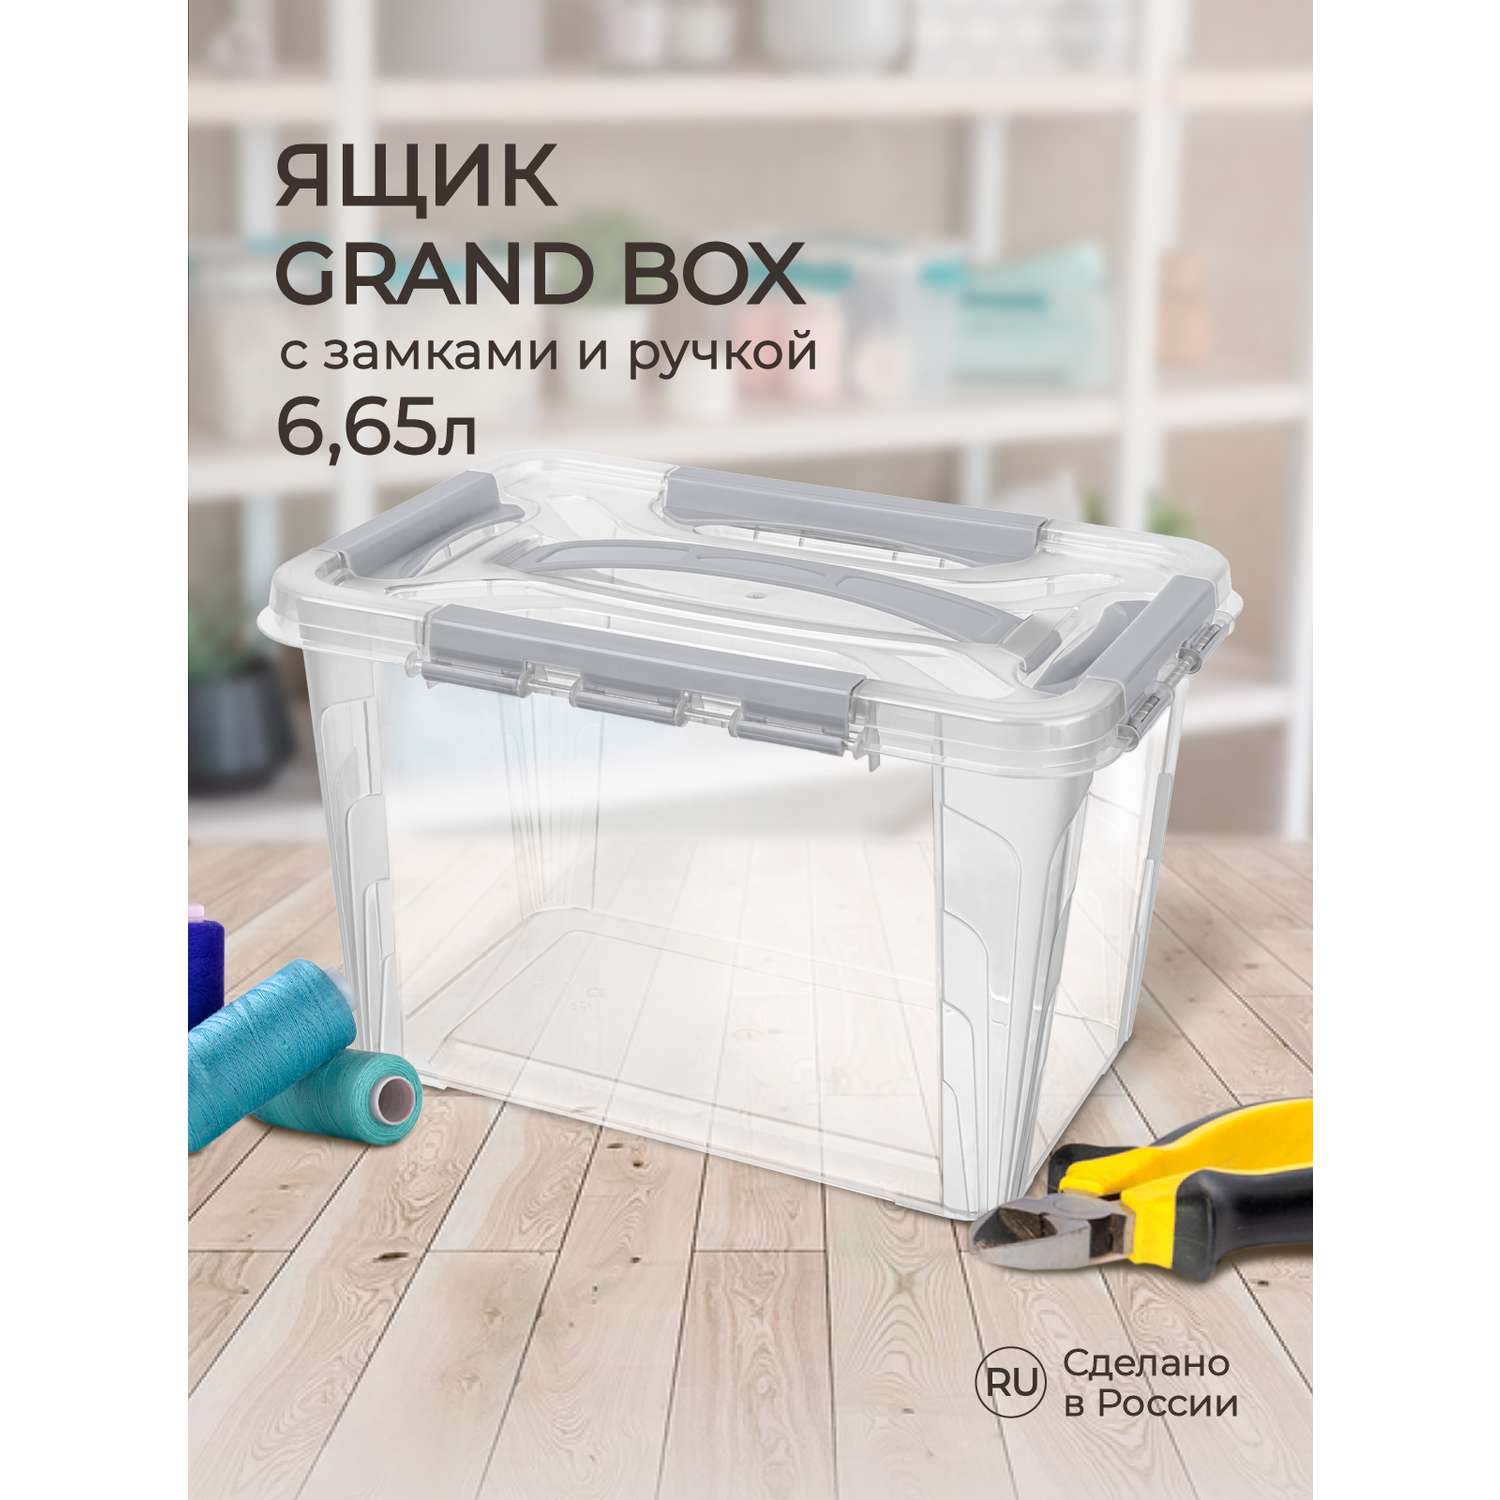 Ящик для хранения Econova универсальный с замками и ручкой Grand Box 6650 мл светло-серый - фото 1